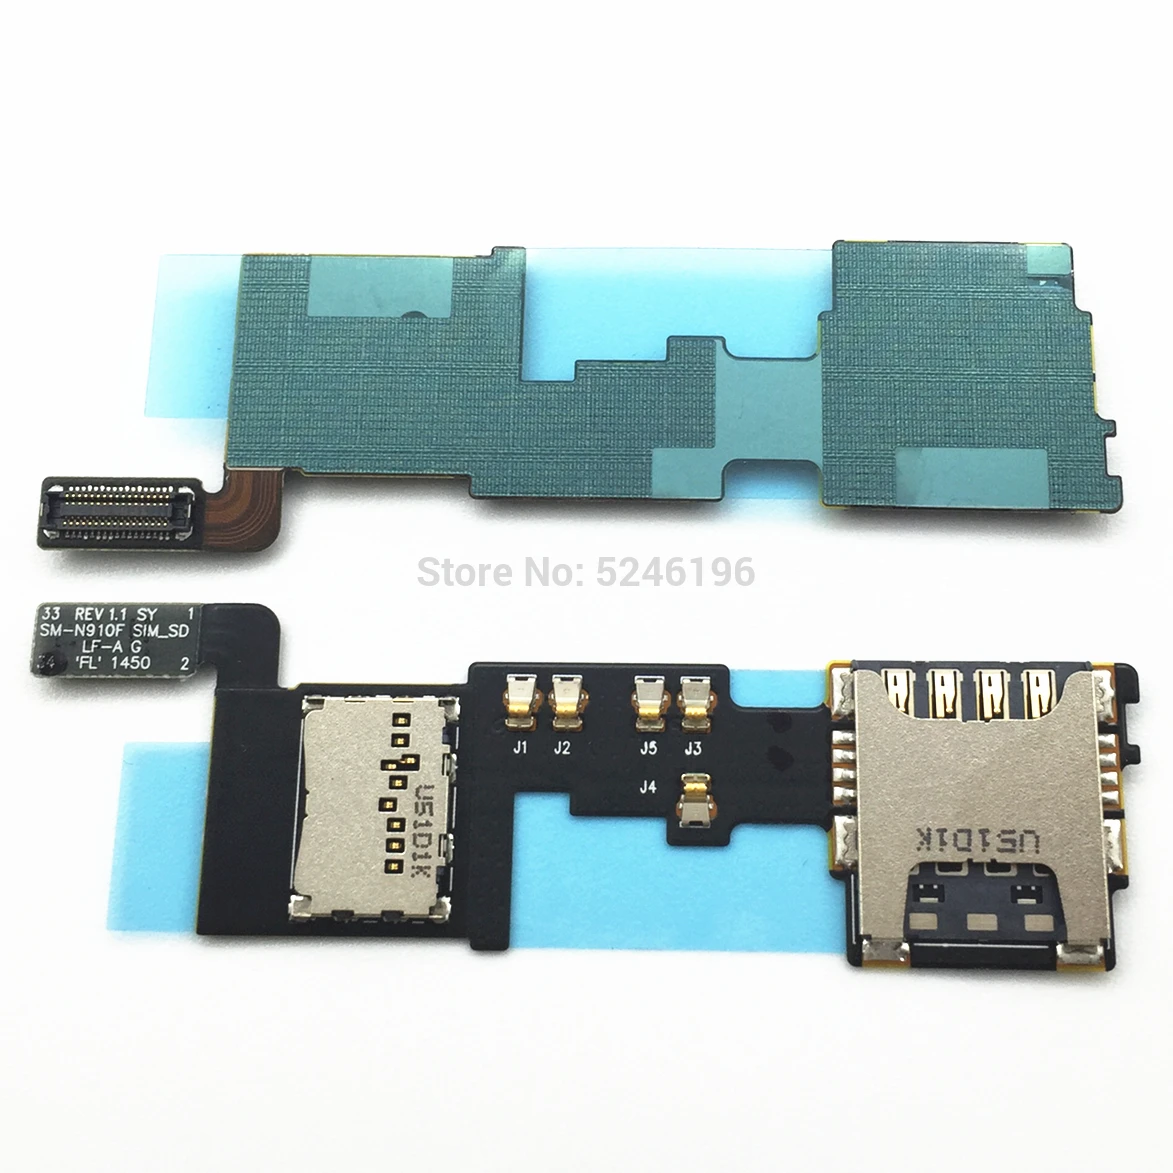 1 шт. SIM/SD считыватель карт Слот лоток гнездо держатель Разъем Модуль гибкий кабель для samsung Galaxy Note 4 N910F Запасная часть